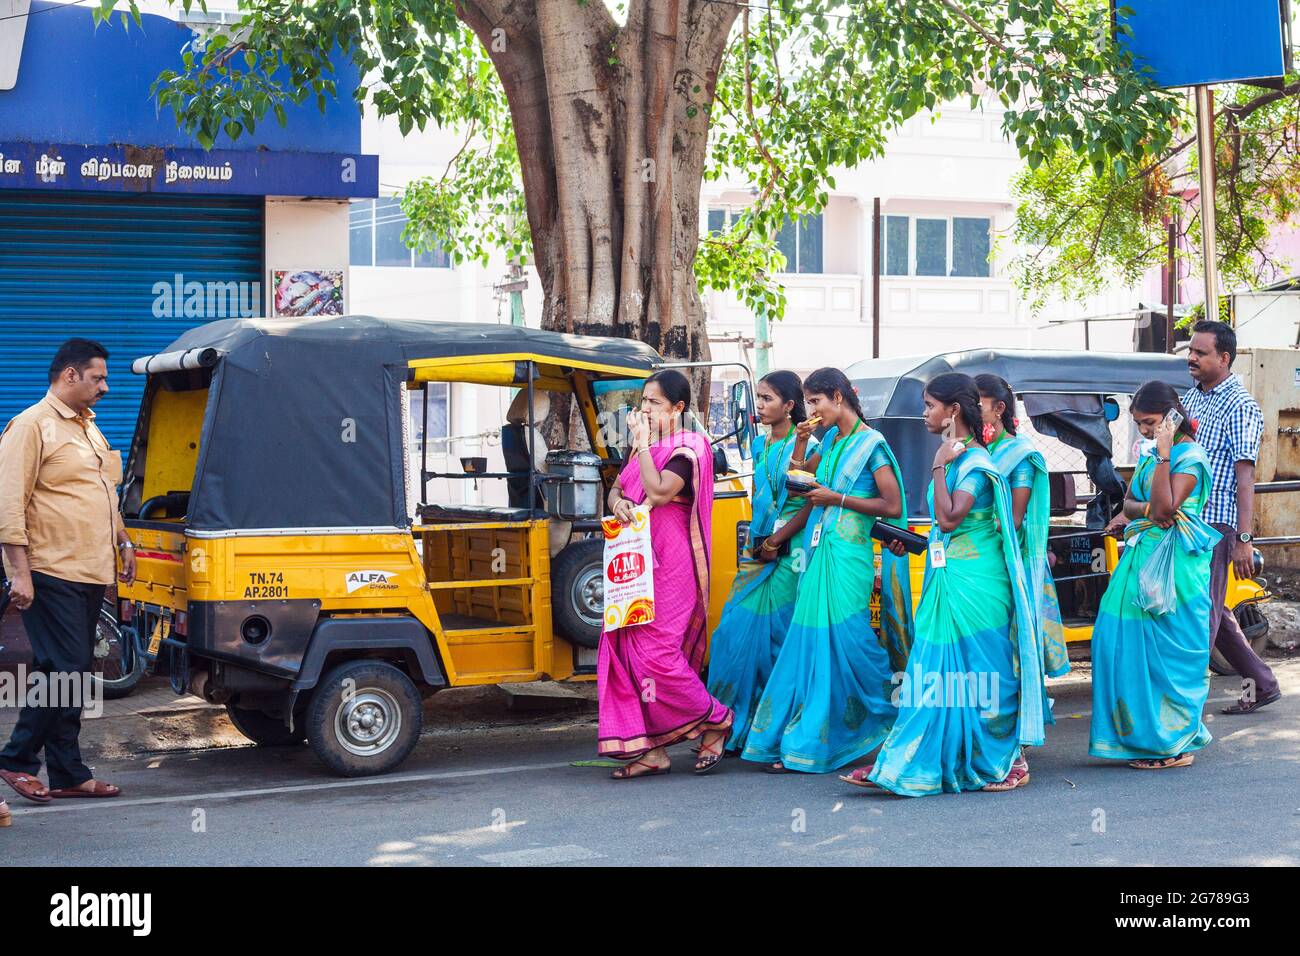 Gruppo di studenti universitari indiani attraenti vestiti con sari blu/verdi dello stesso colore camminare passato auto rickshaws parcheggiato, Kanyakumari, Tamil Nadu, India Foto Stock